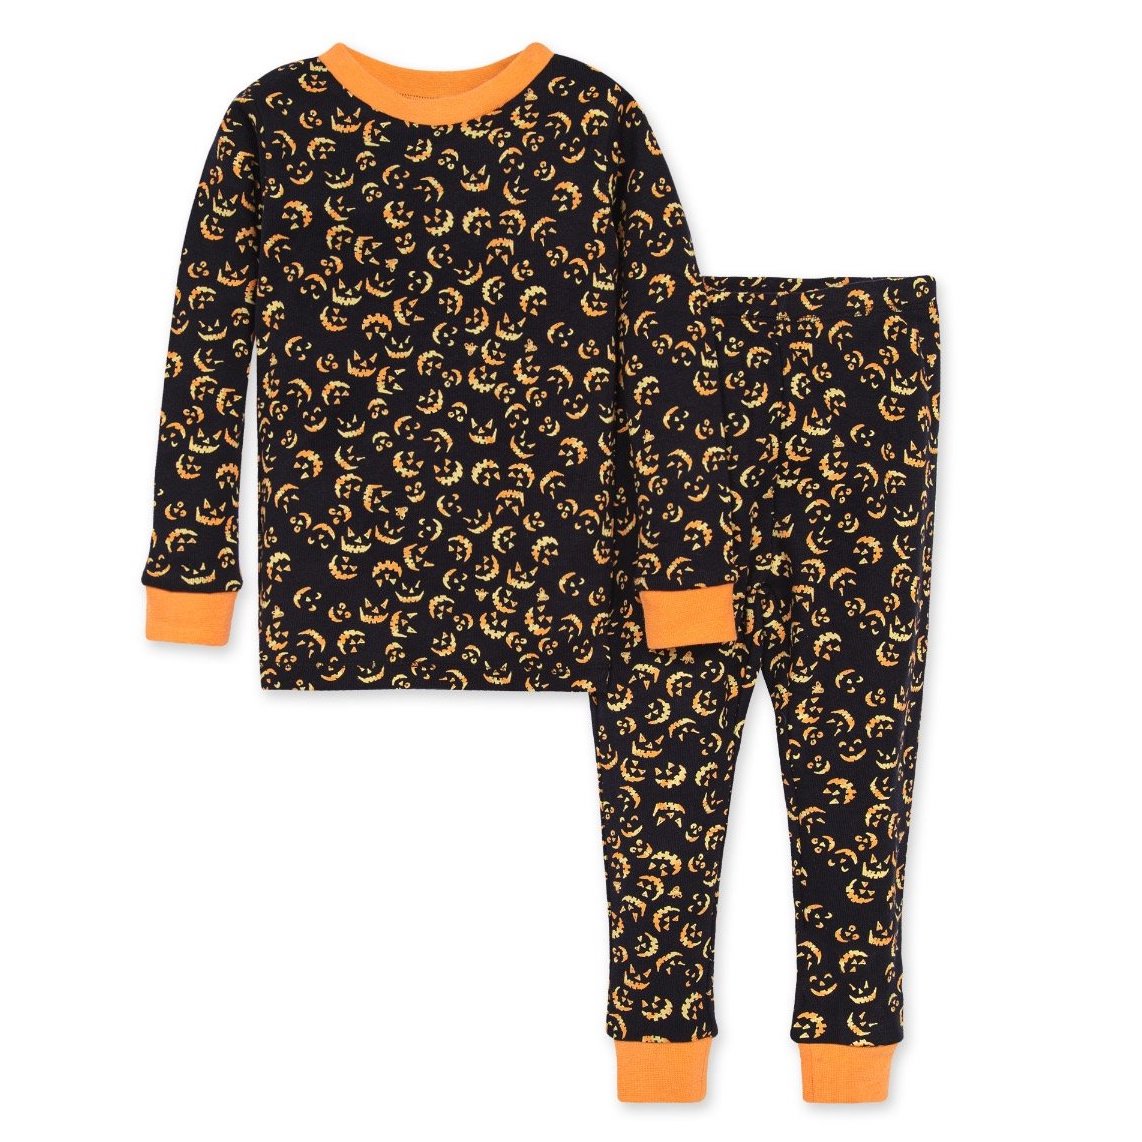 Jack O' Lantern Pajamas from Burt's Bees Baby